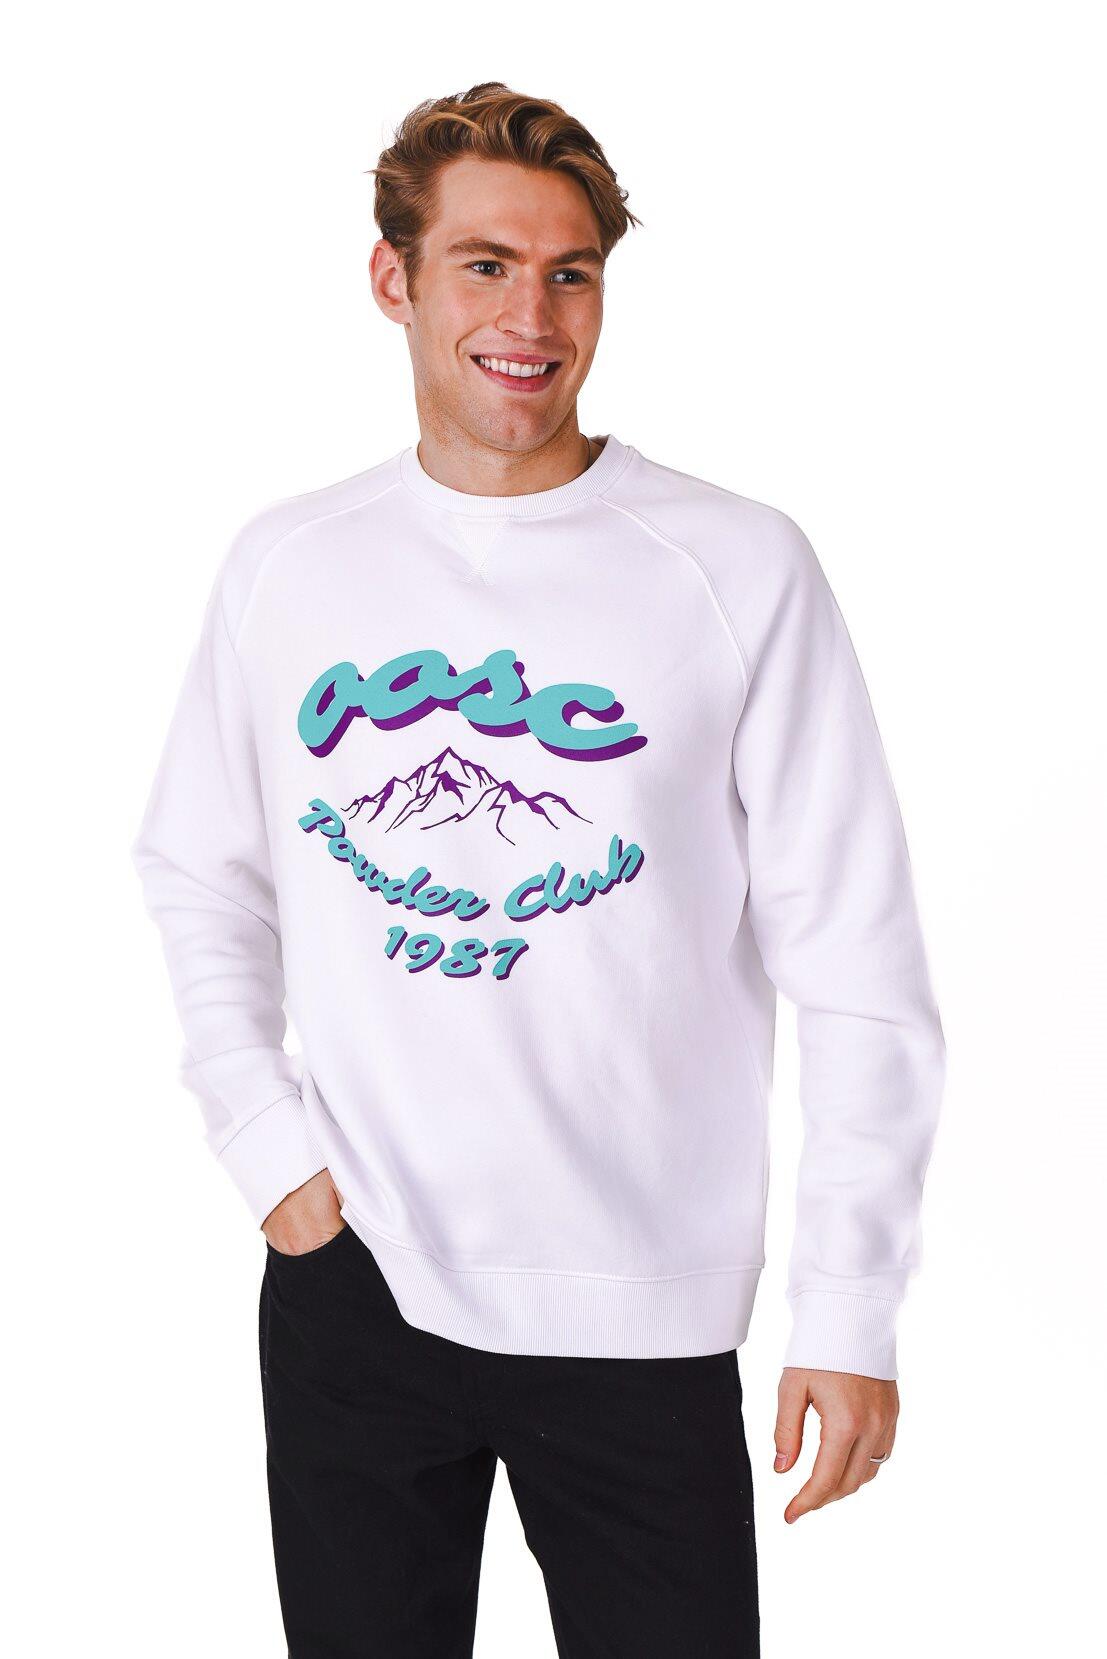 OOSC Powder Club Sweatshirt